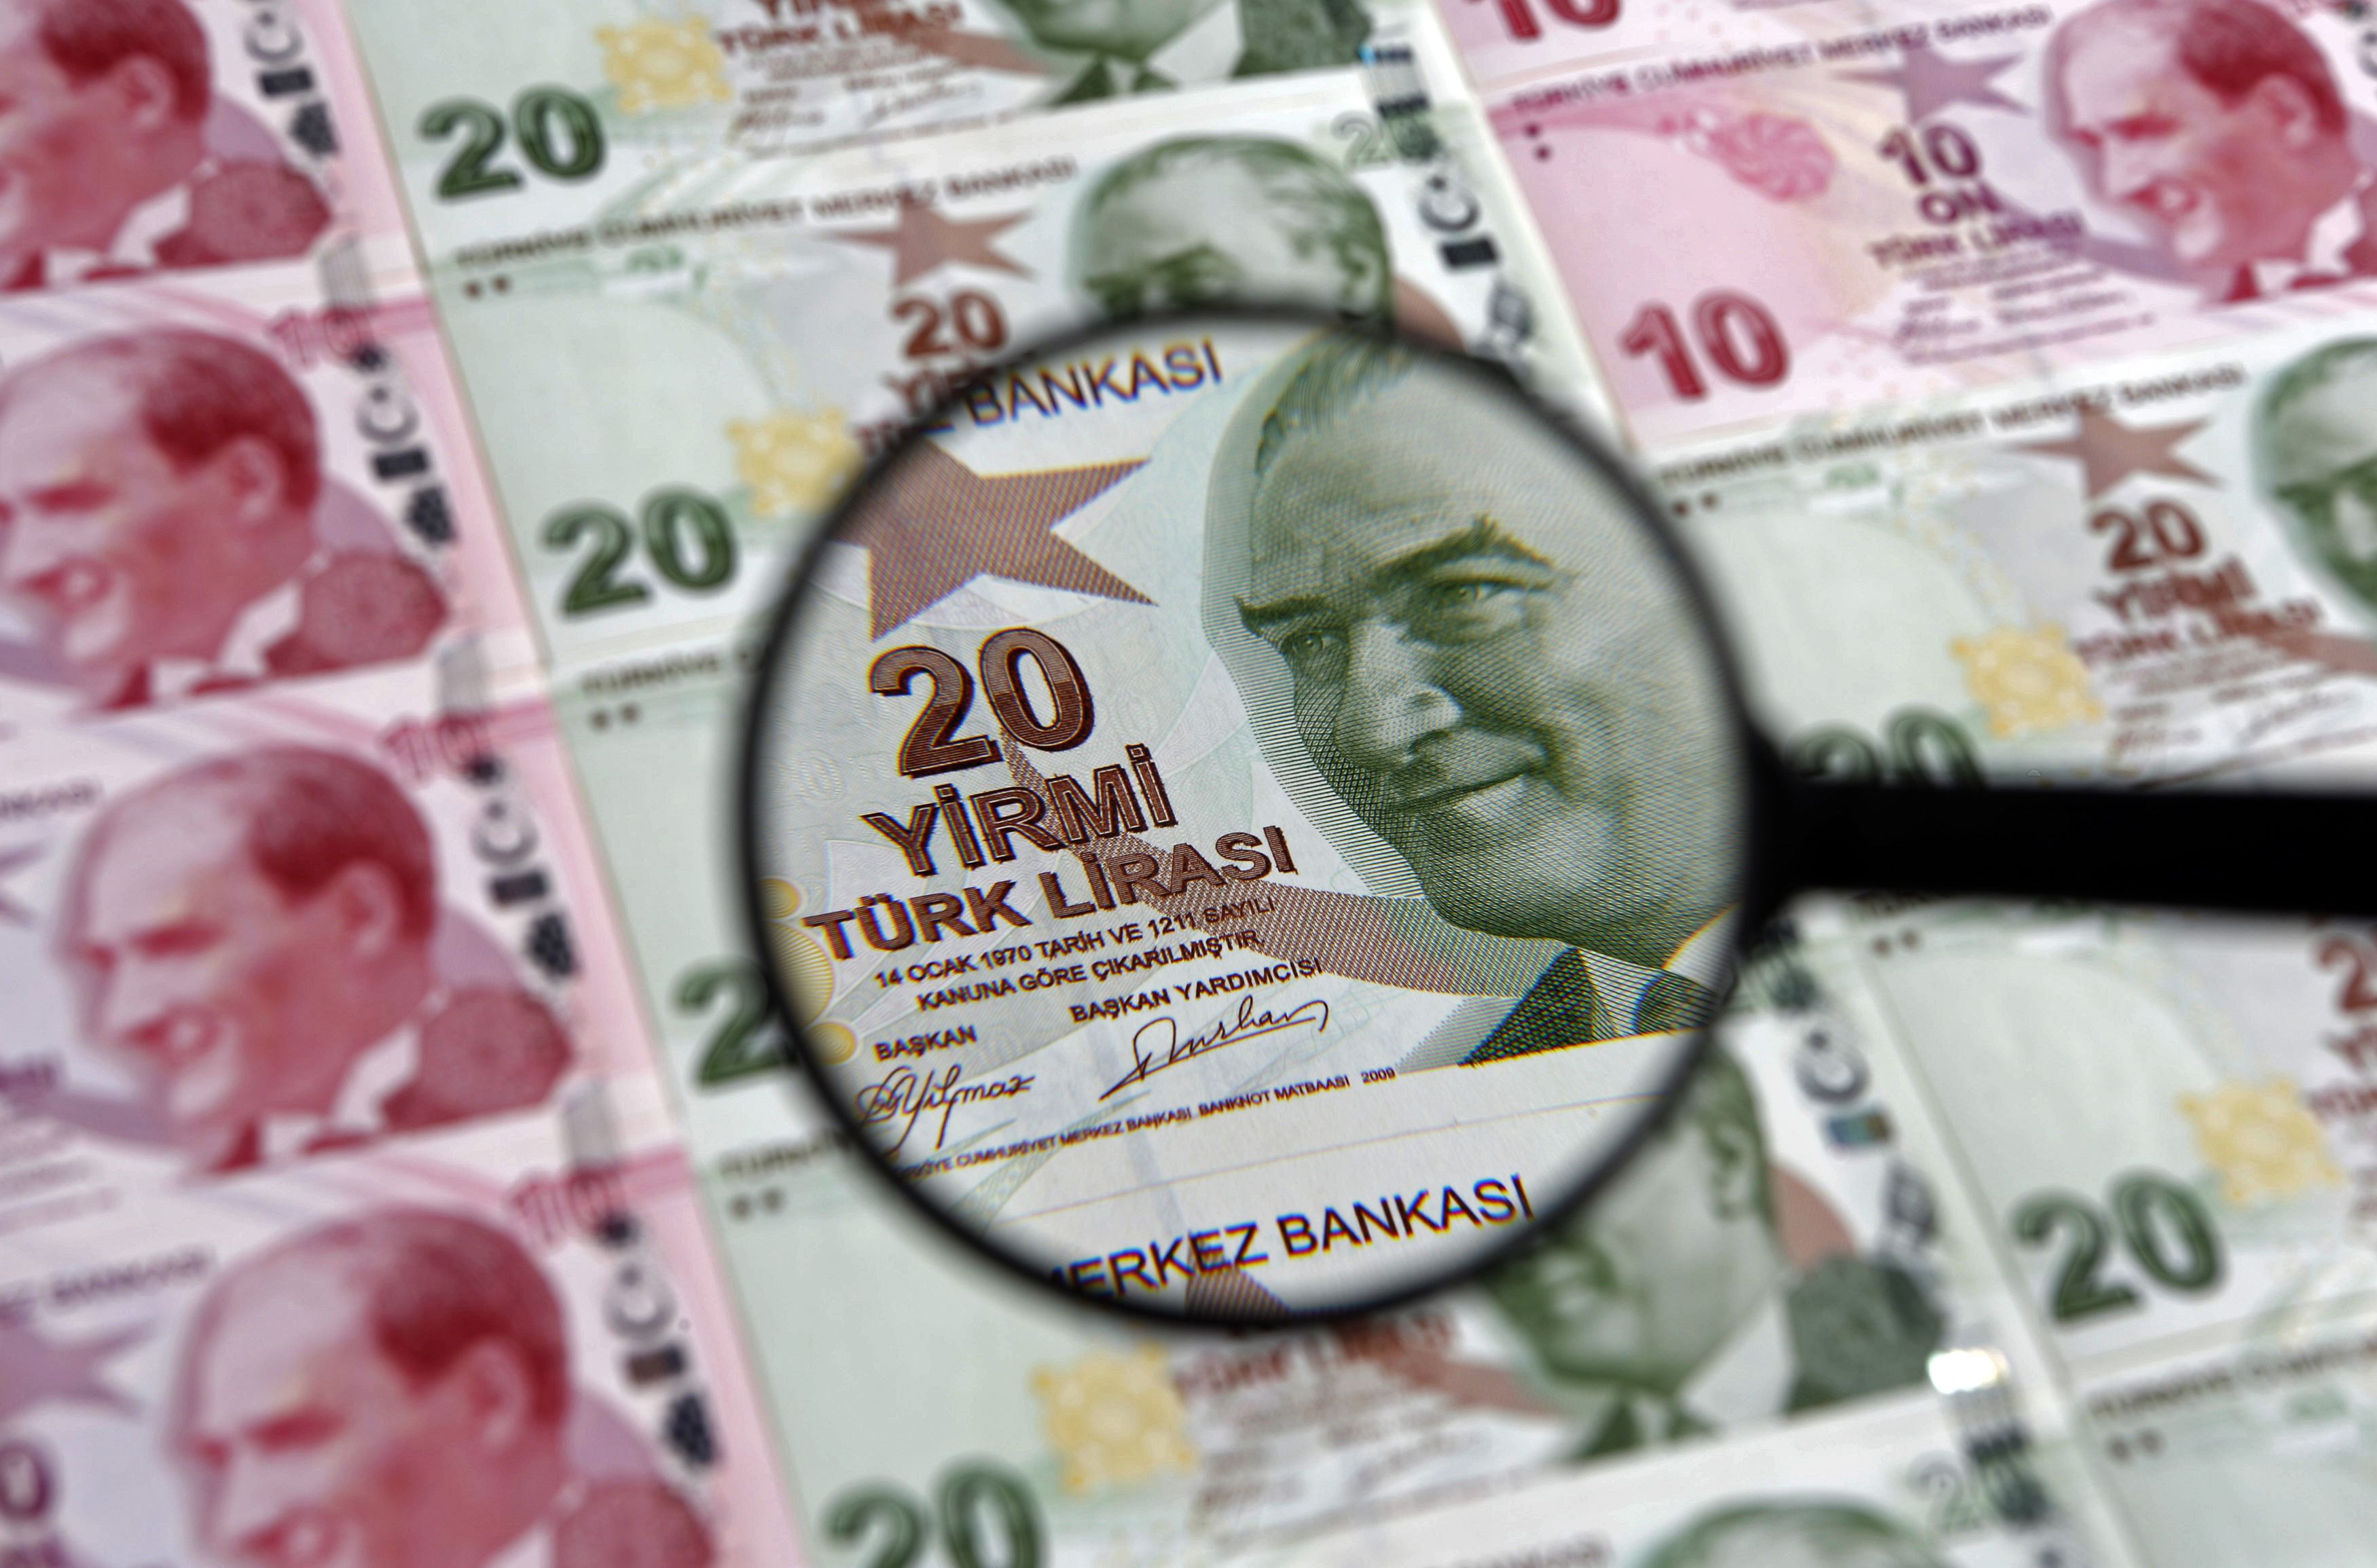 Σταθερά τα επιτόκια της τουρκικής λίρας, παρά τις πιέσεις Ερντογάν